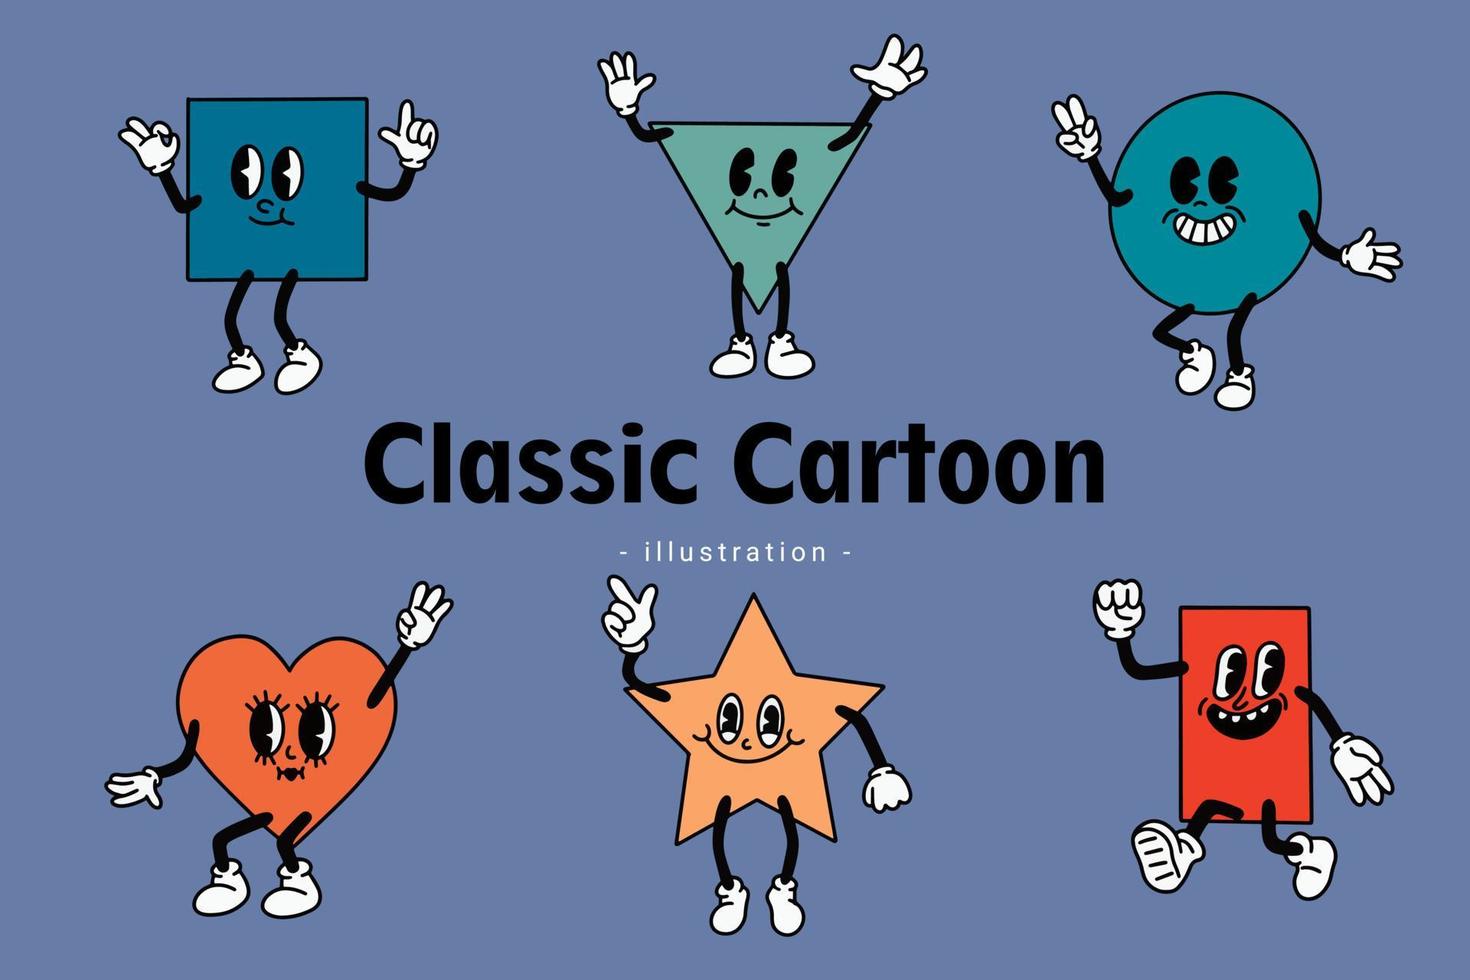 ensemble d'émotion comique de dessin animé vintage classique mignon heureux avec l'expression du visage personnage de doodle main et pied vecteur